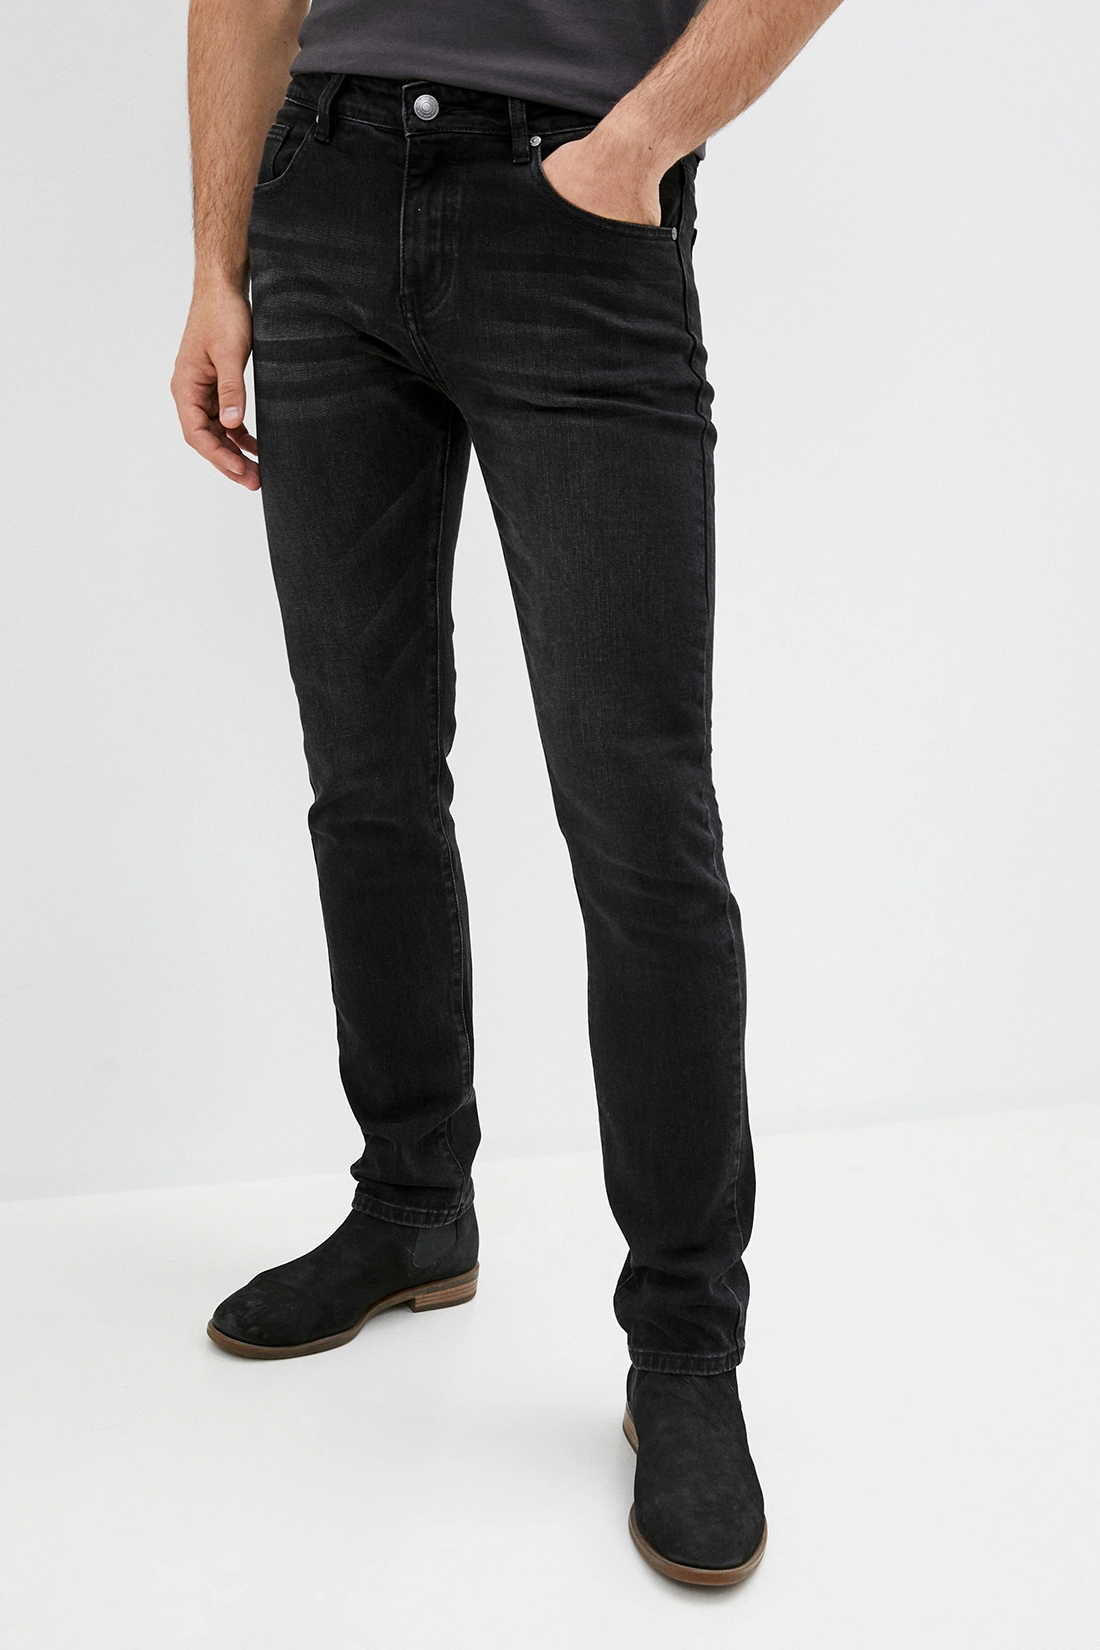 Чёрные джинсы (арт. baon B800503), размер 36, цвет black denim#черный